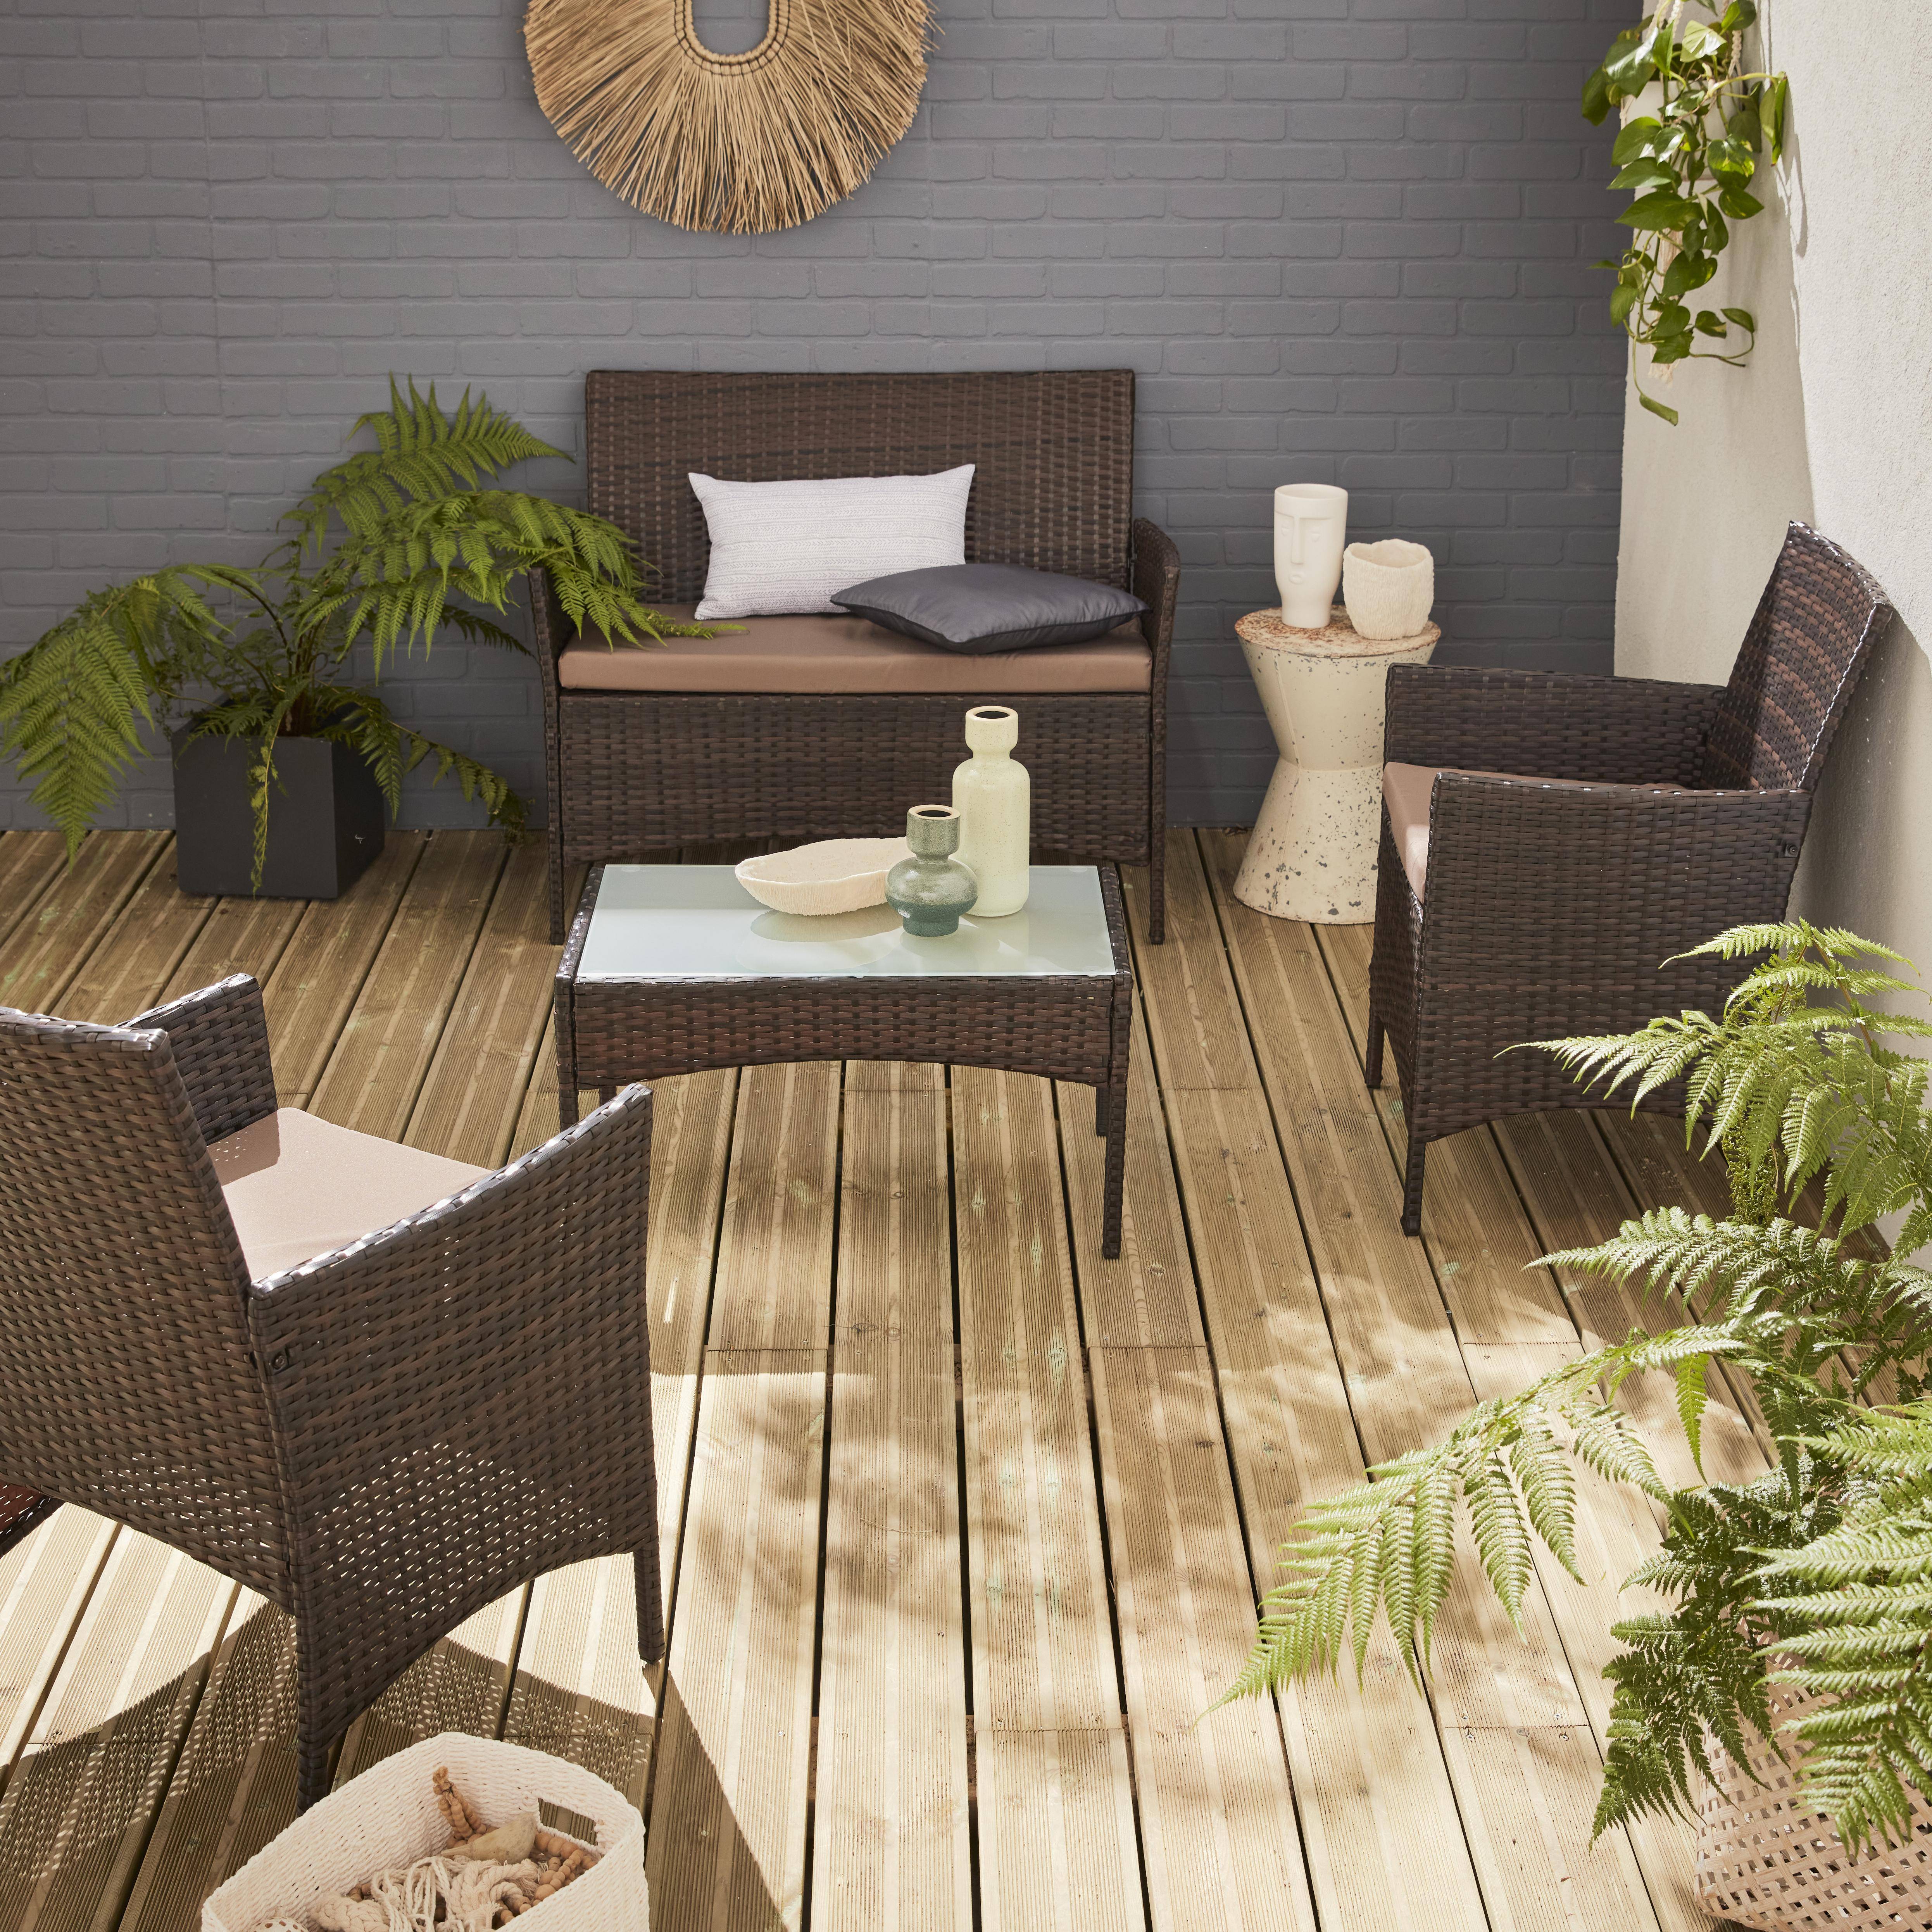 Gartengarnitur aus Polyrattan - Moltès - Schokoladenfarben, Schokoladenfarbene Kissen - 4 Plätze - 1 Sofa, 2 Sessel, ein Couchtisch Photo1